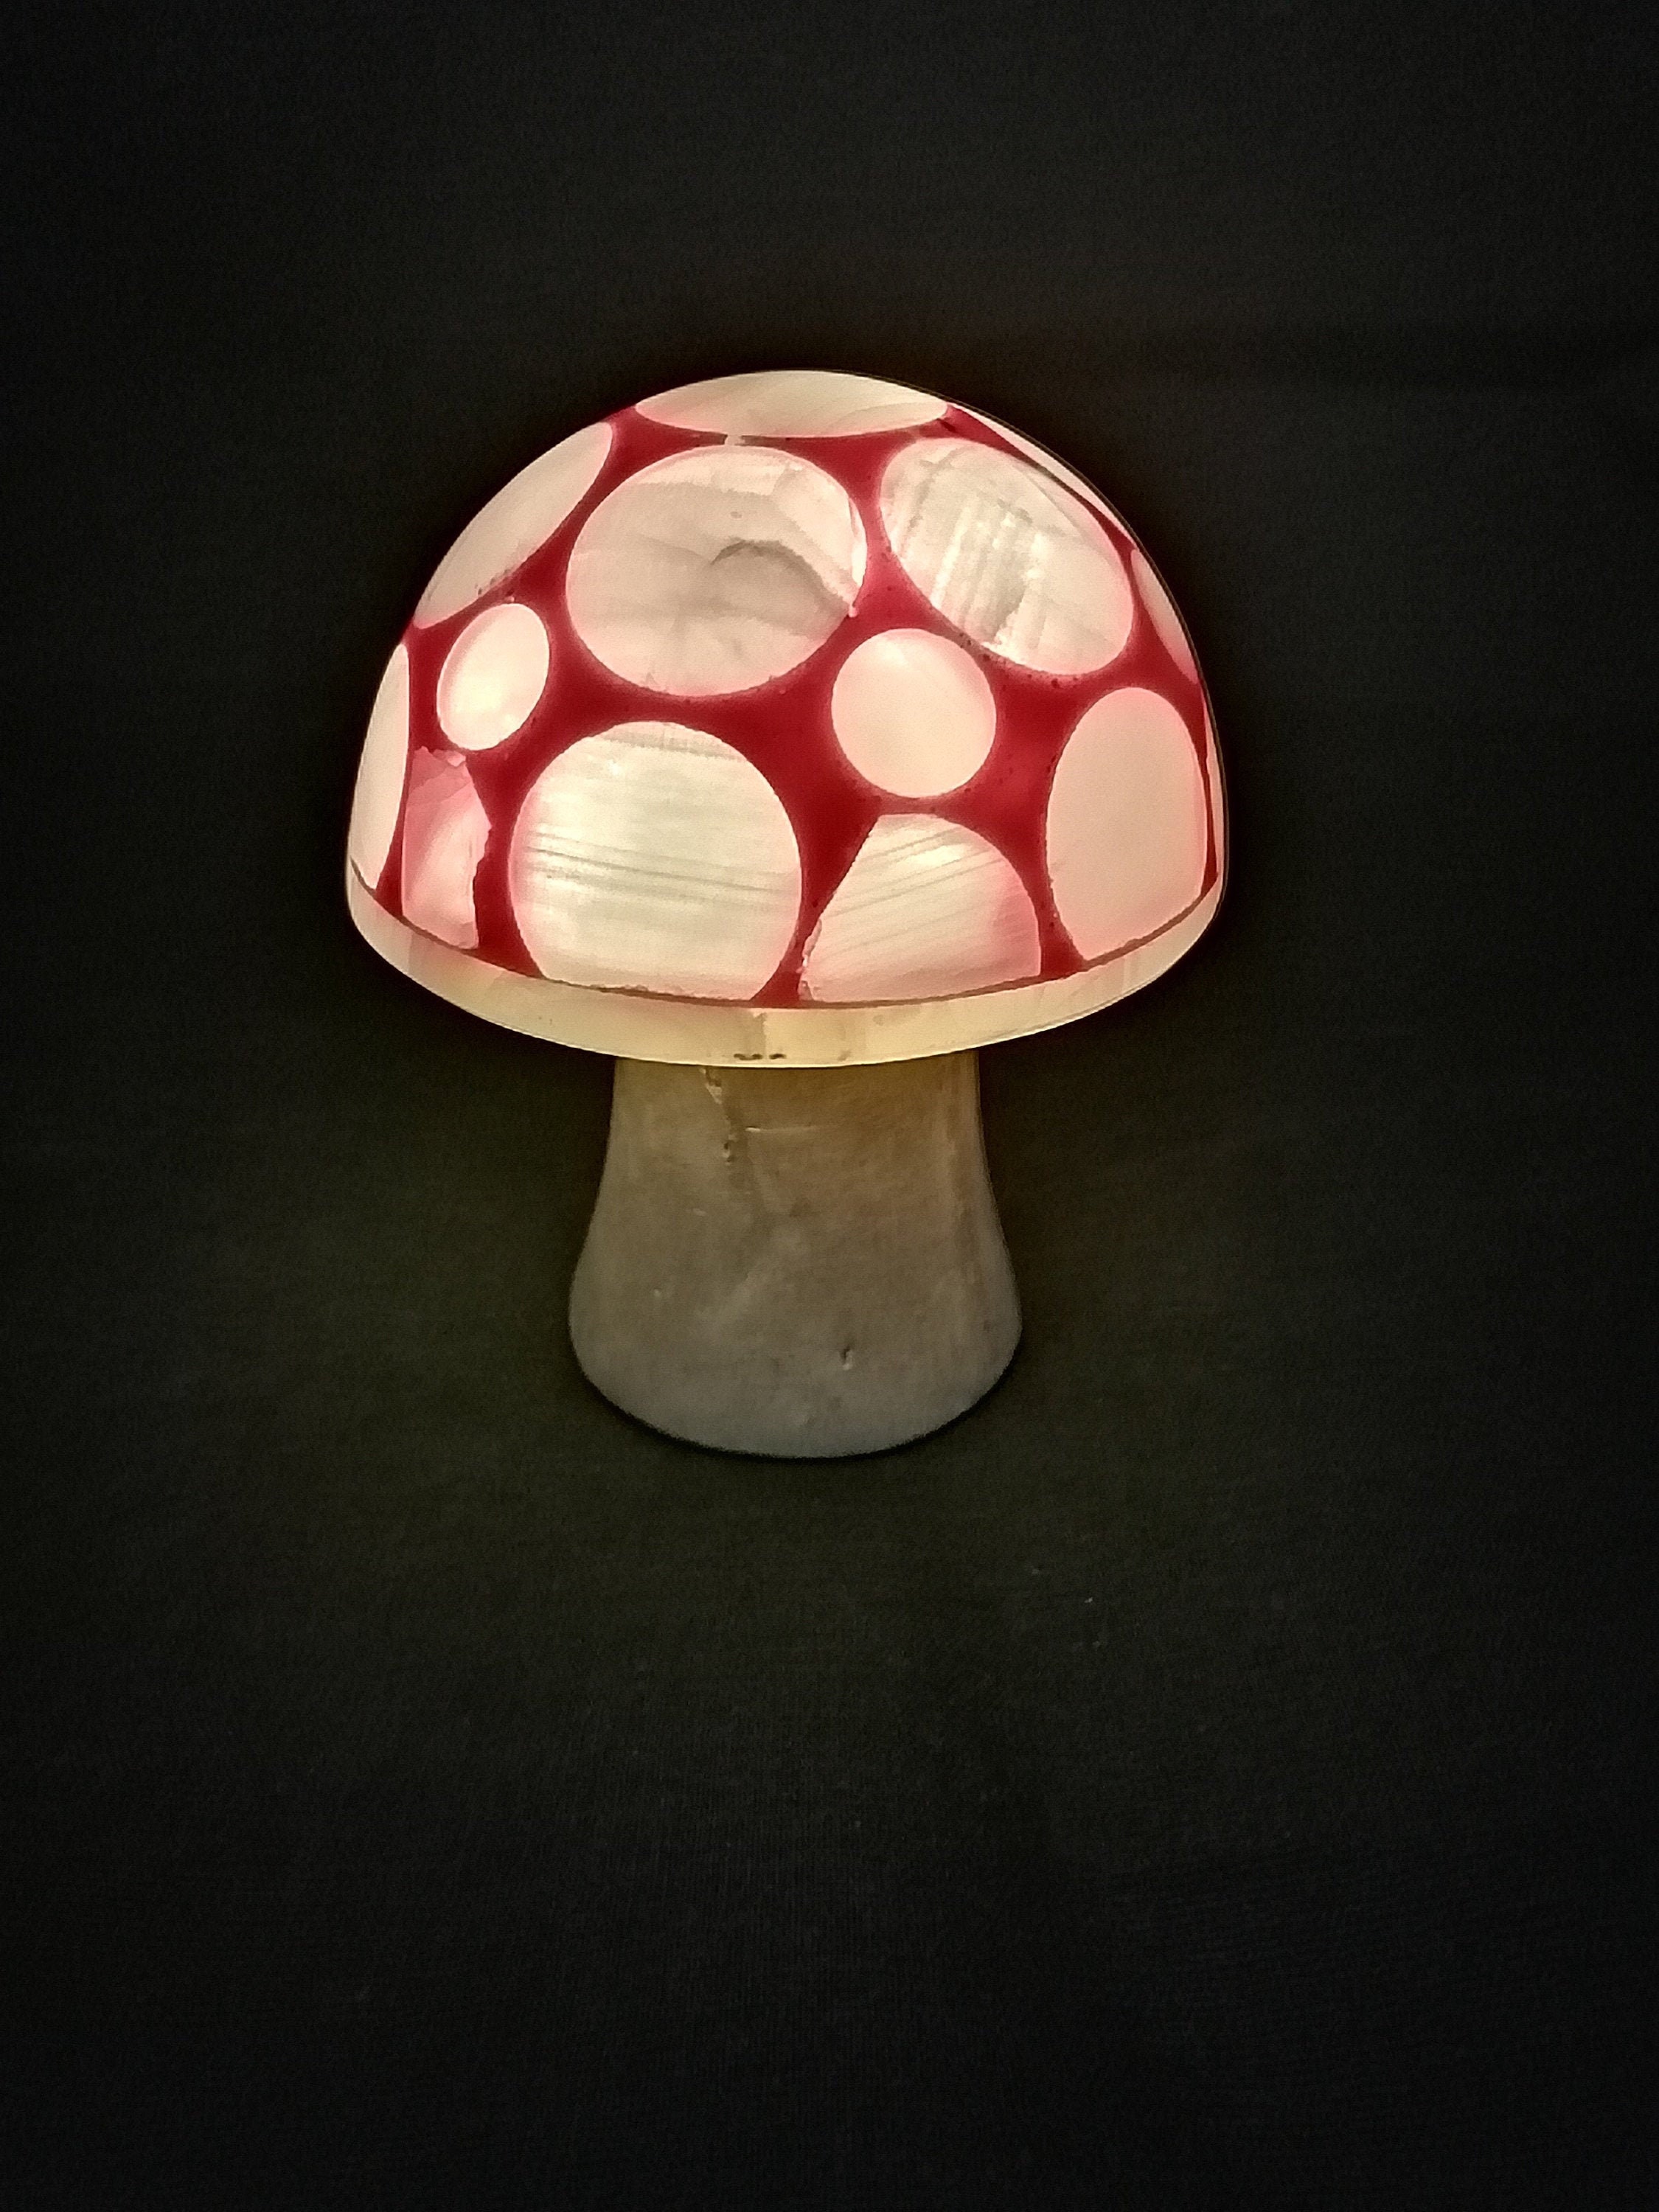 Mushroom lamp baby night lamp bedside lamp indoor lights | Etsy